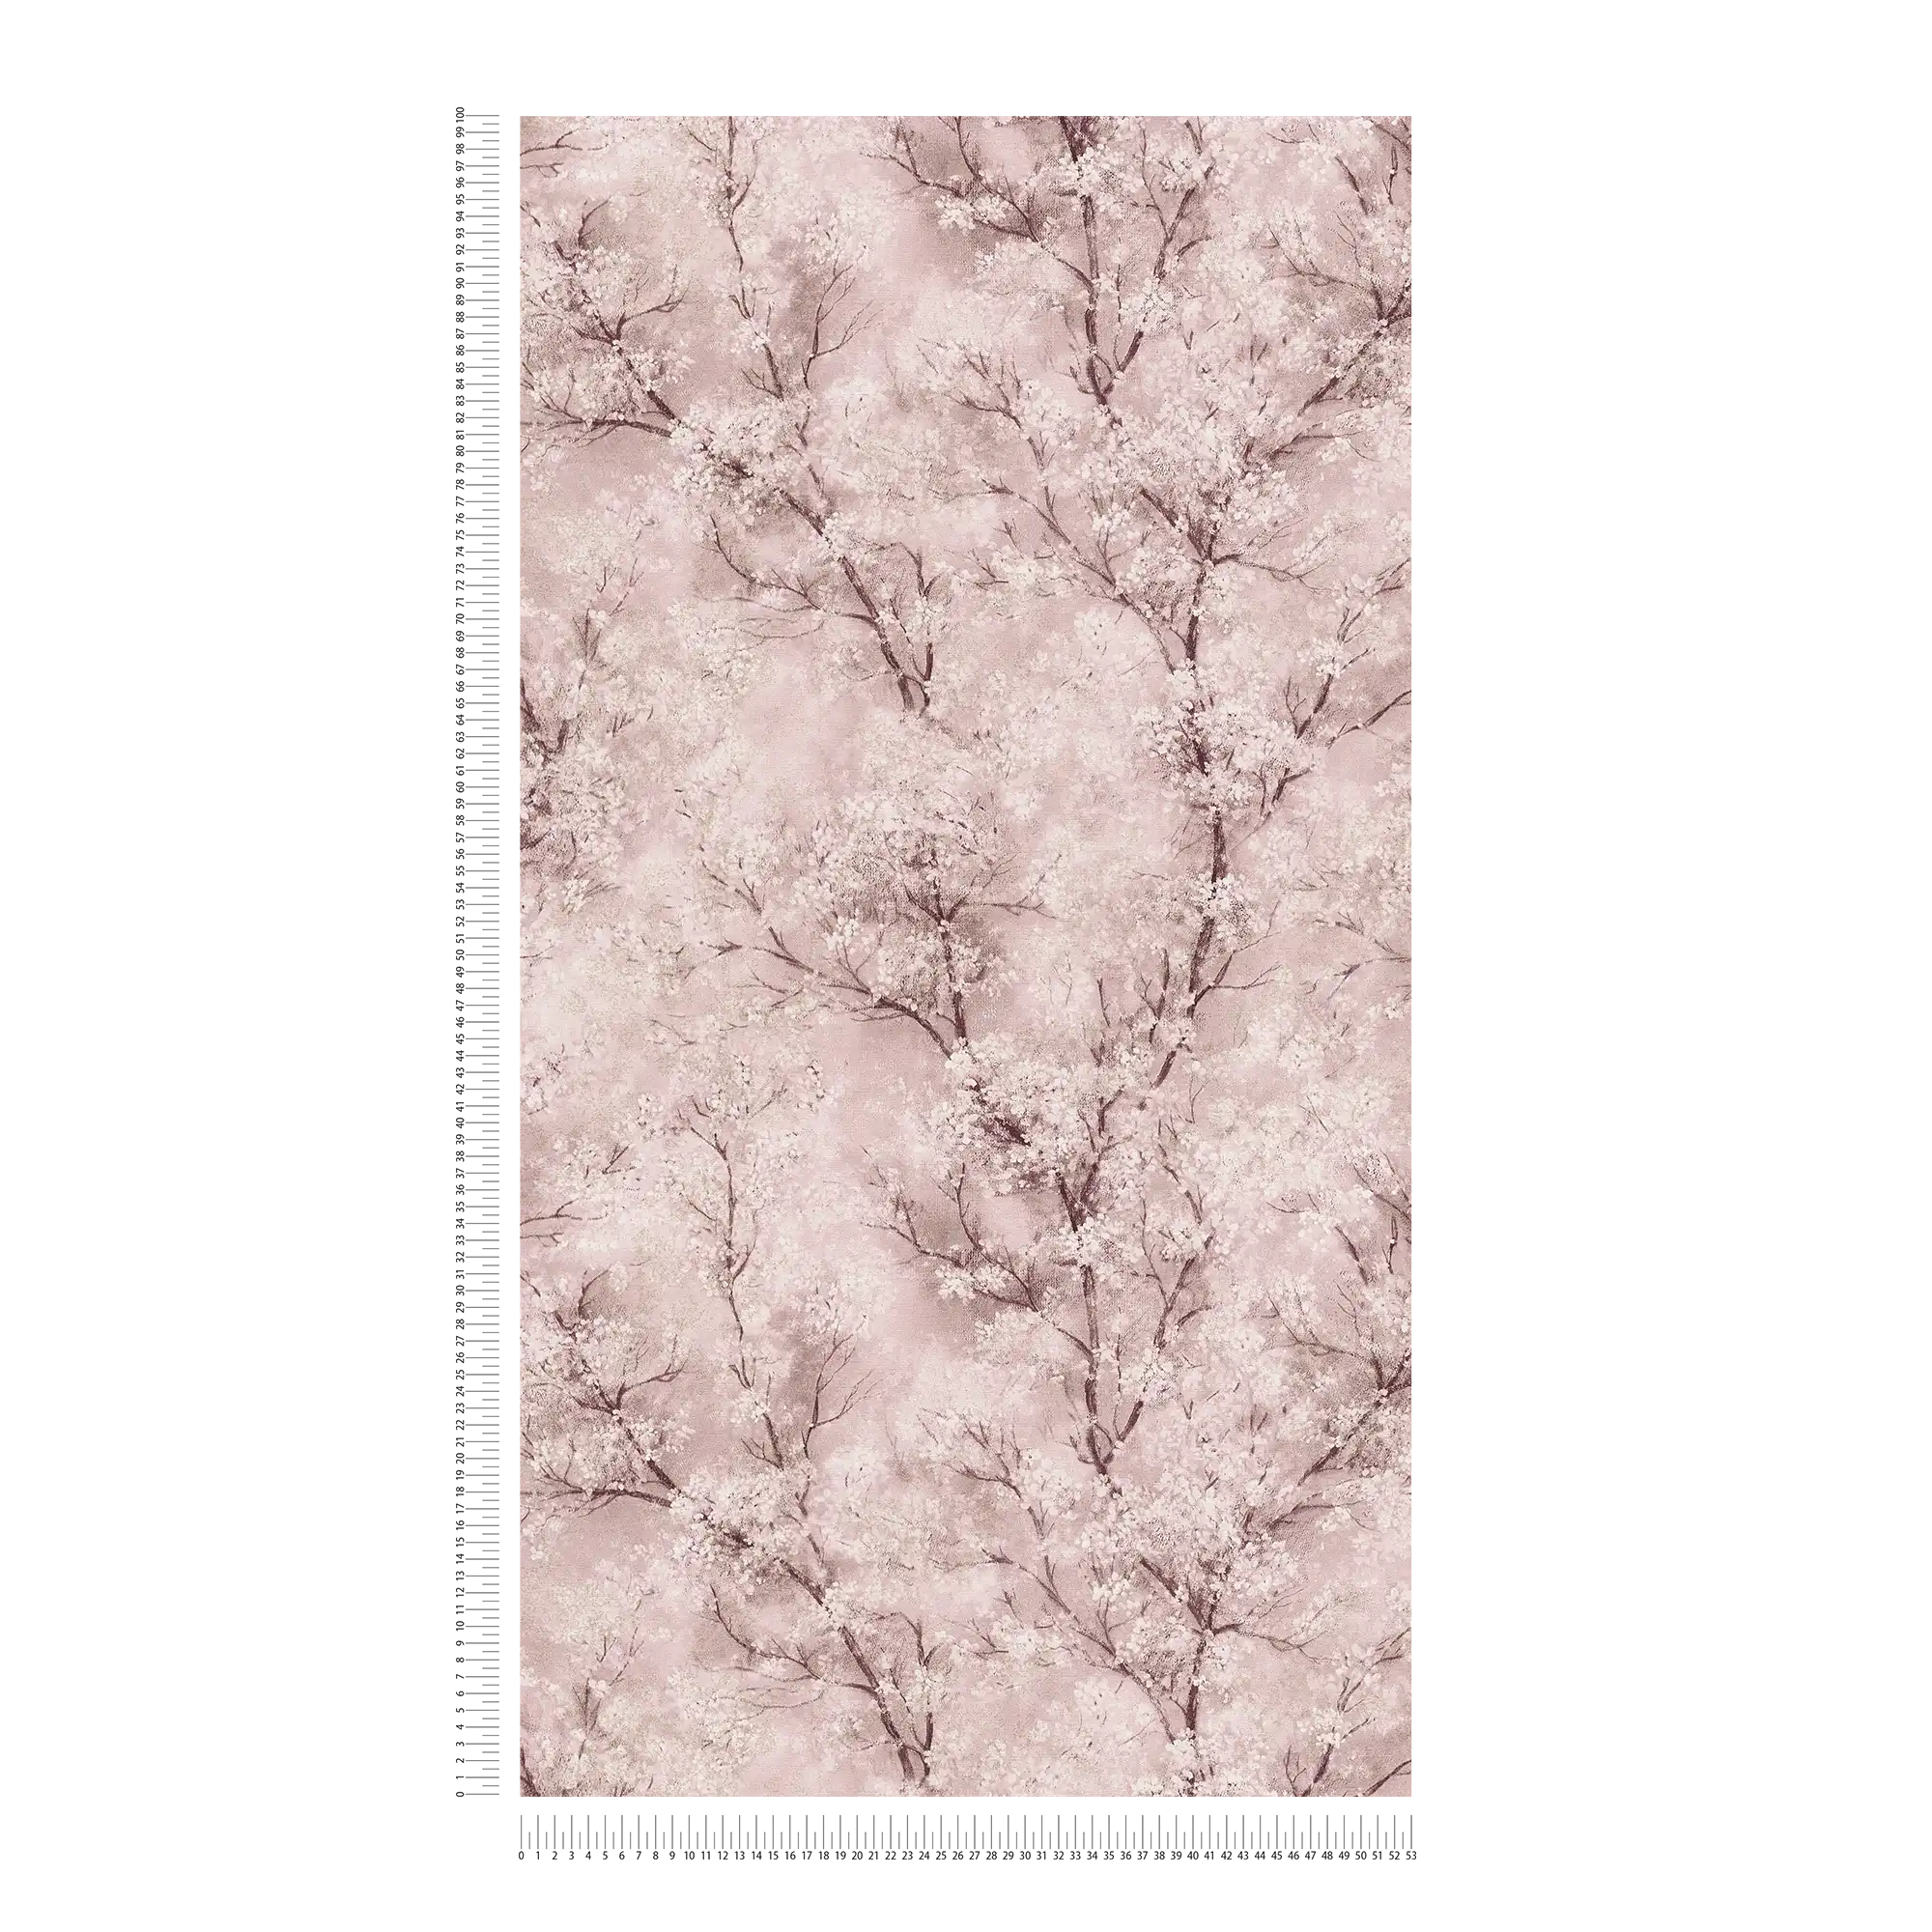             Tapete Kirschblüten Glitzer-Effekt – Rosa, Braun, Weiß
        